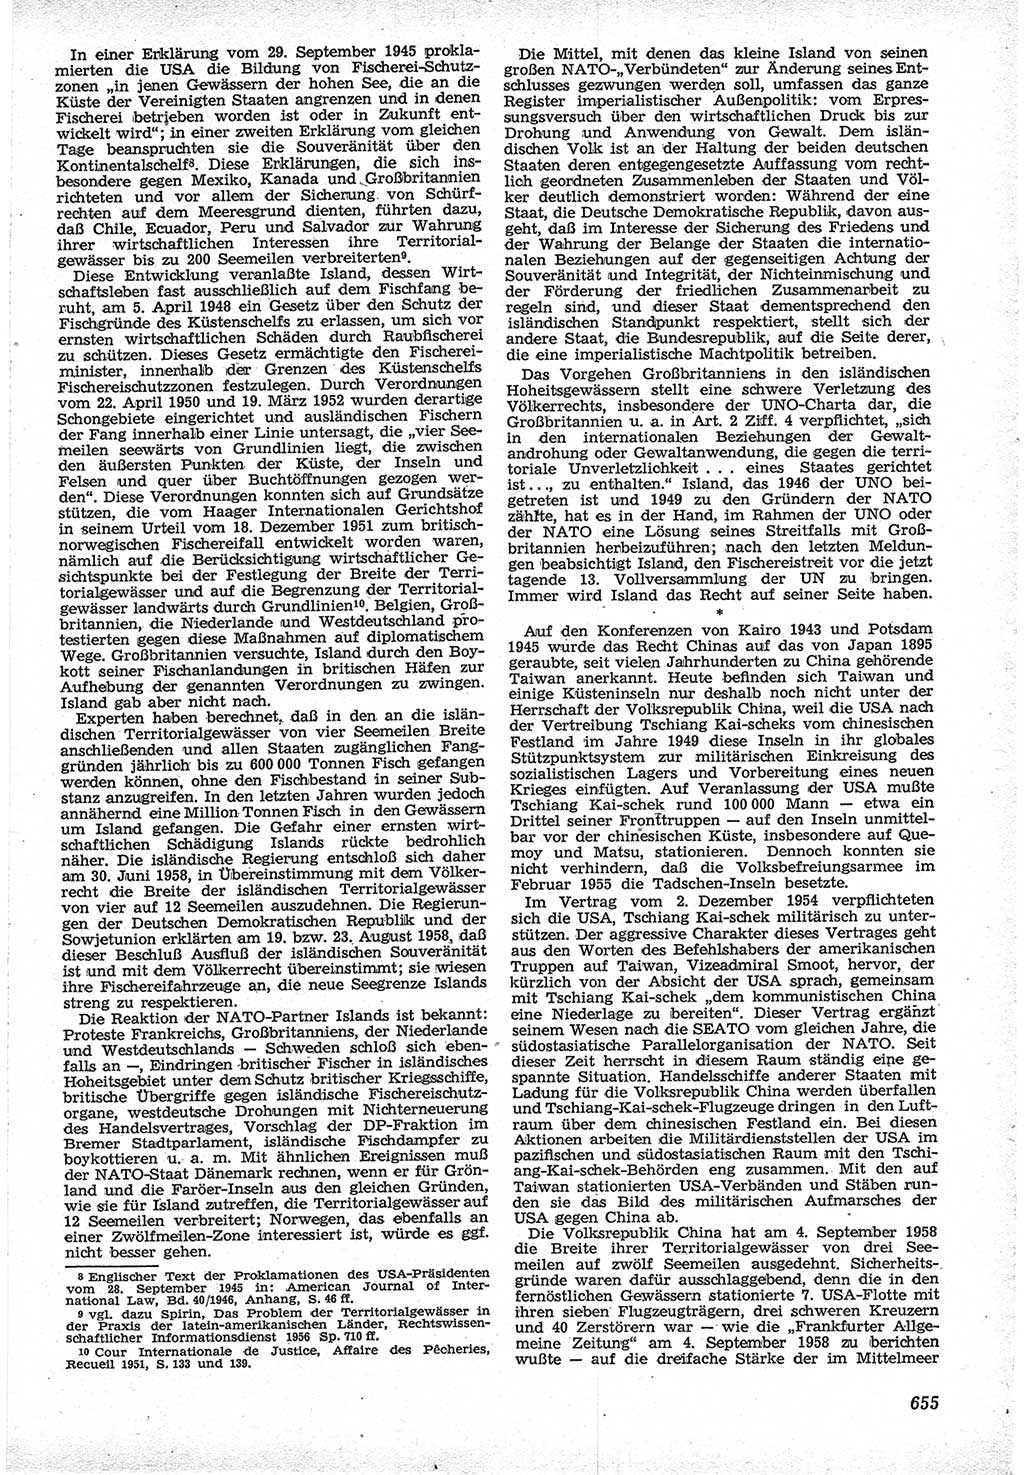 Neue Justiz (NJ), Zeitschrift für Recht und Rechtswissenschaft [Deutsche Demokratische Republik (DDR)], 12. Jahrgang 1958, Seite 655 (NJ DDR 1958, S. 655)